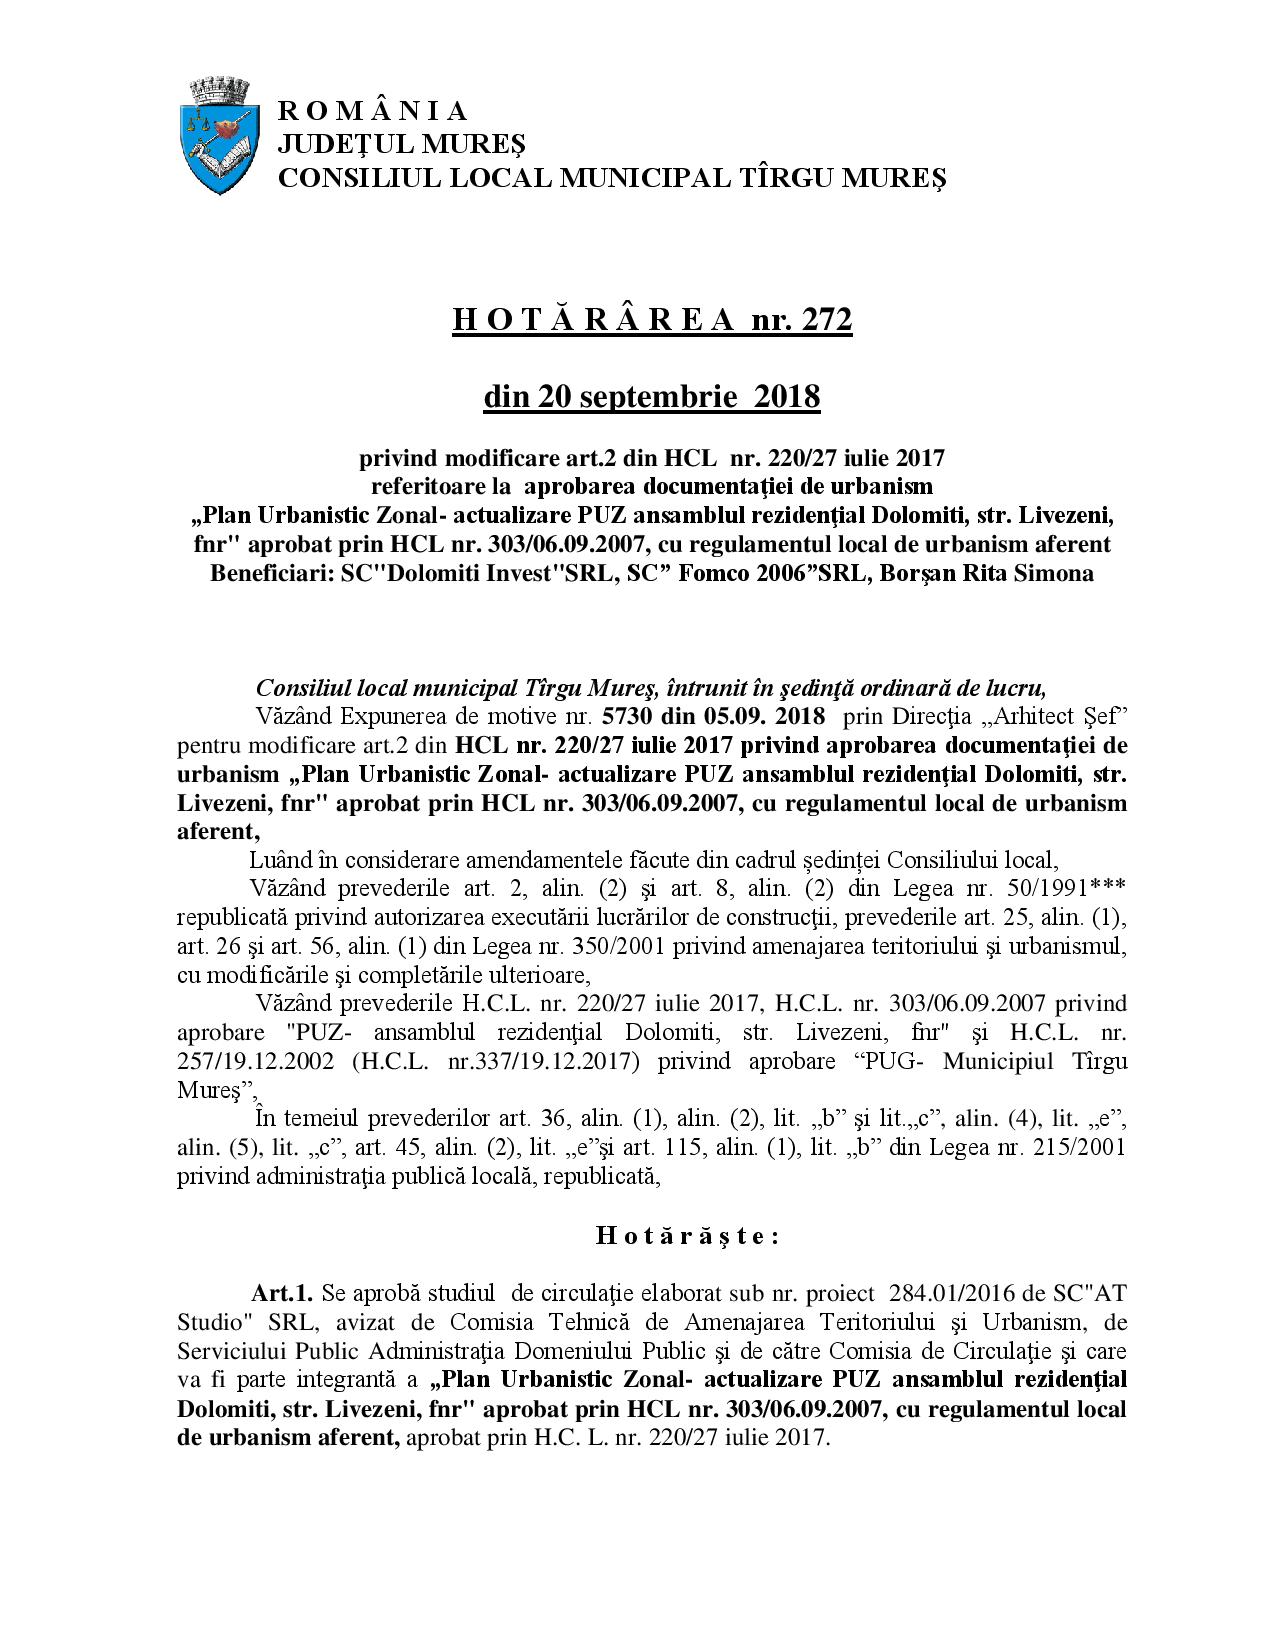 Ceva-i putred în Târgu Mureș se modifică art. 2 din HCL nr. 220/2017. În concret, se înlătură prevederea în baza căreia beneficiarii PUZ-ului aveau obligația obținerii acordului autentic al proprietarilor